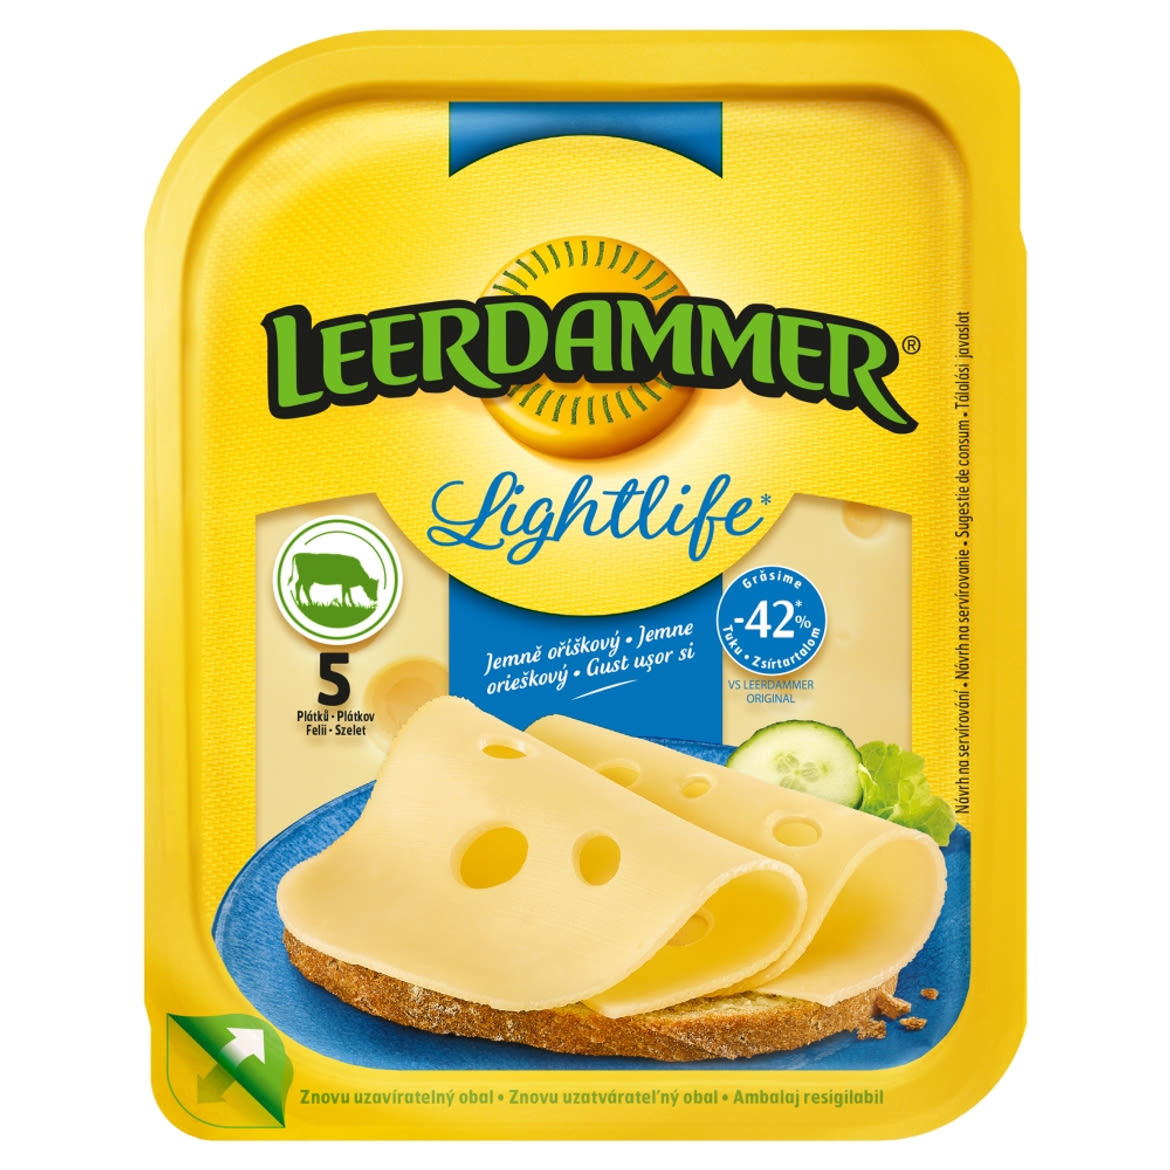 Leerdammer Lightlife félzsíros félkemény, szeletelt sajt